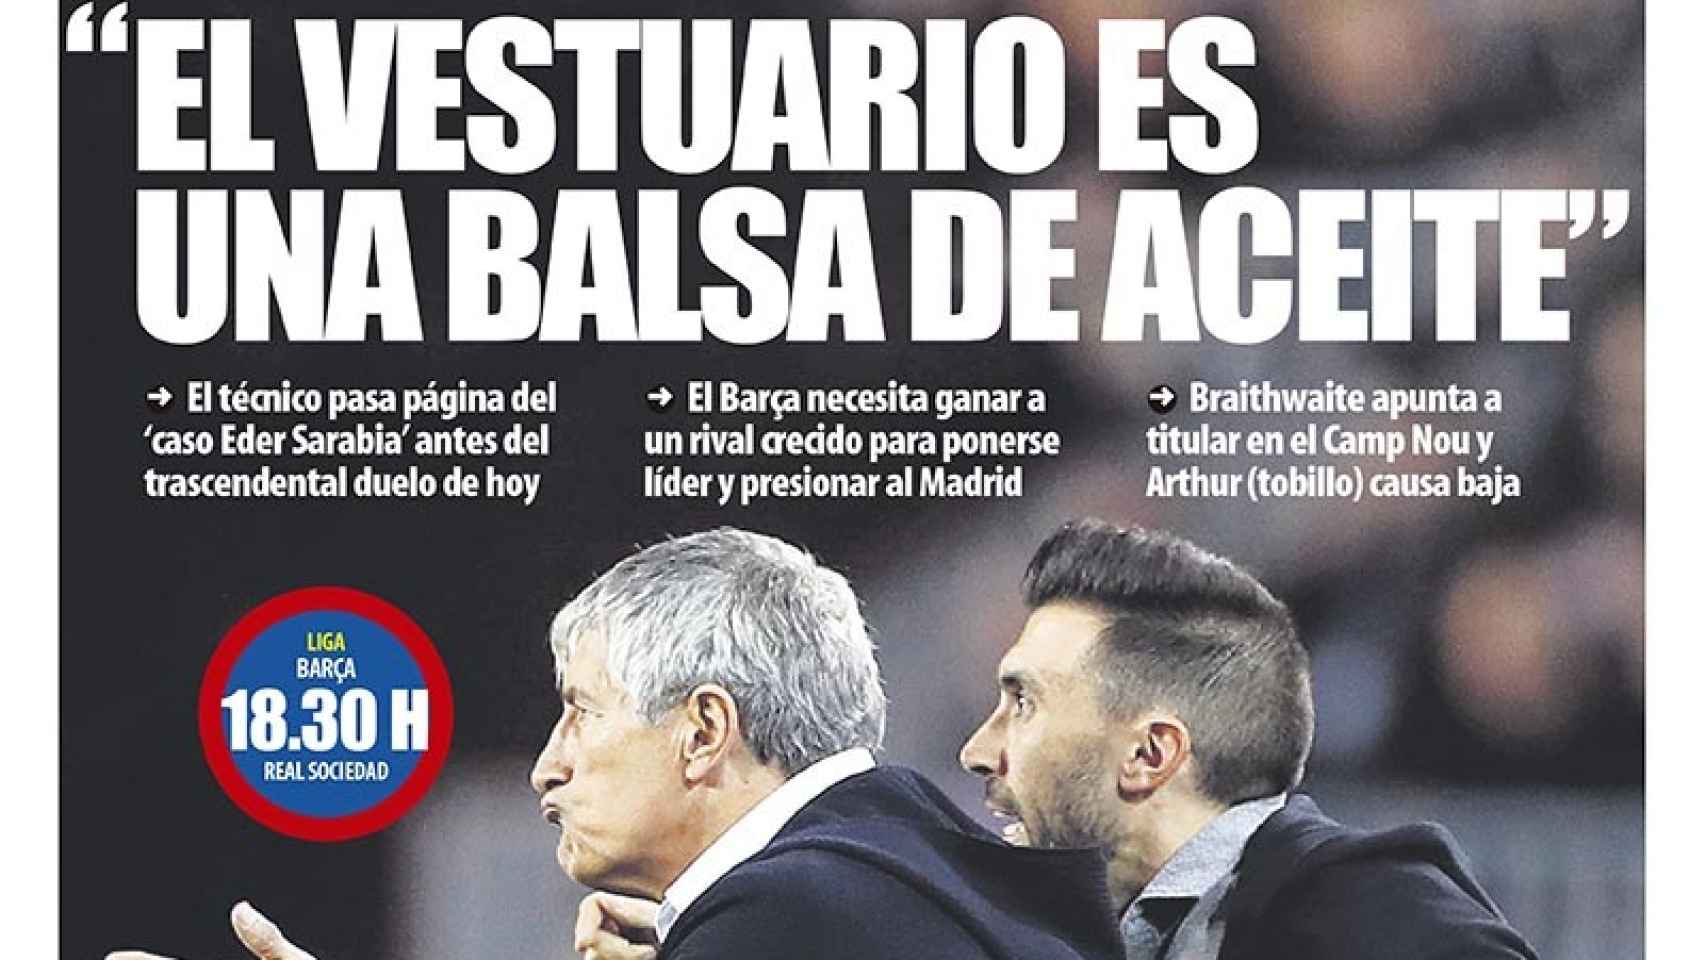 La portada del diario Mundo Deportivo (07/03/2020)